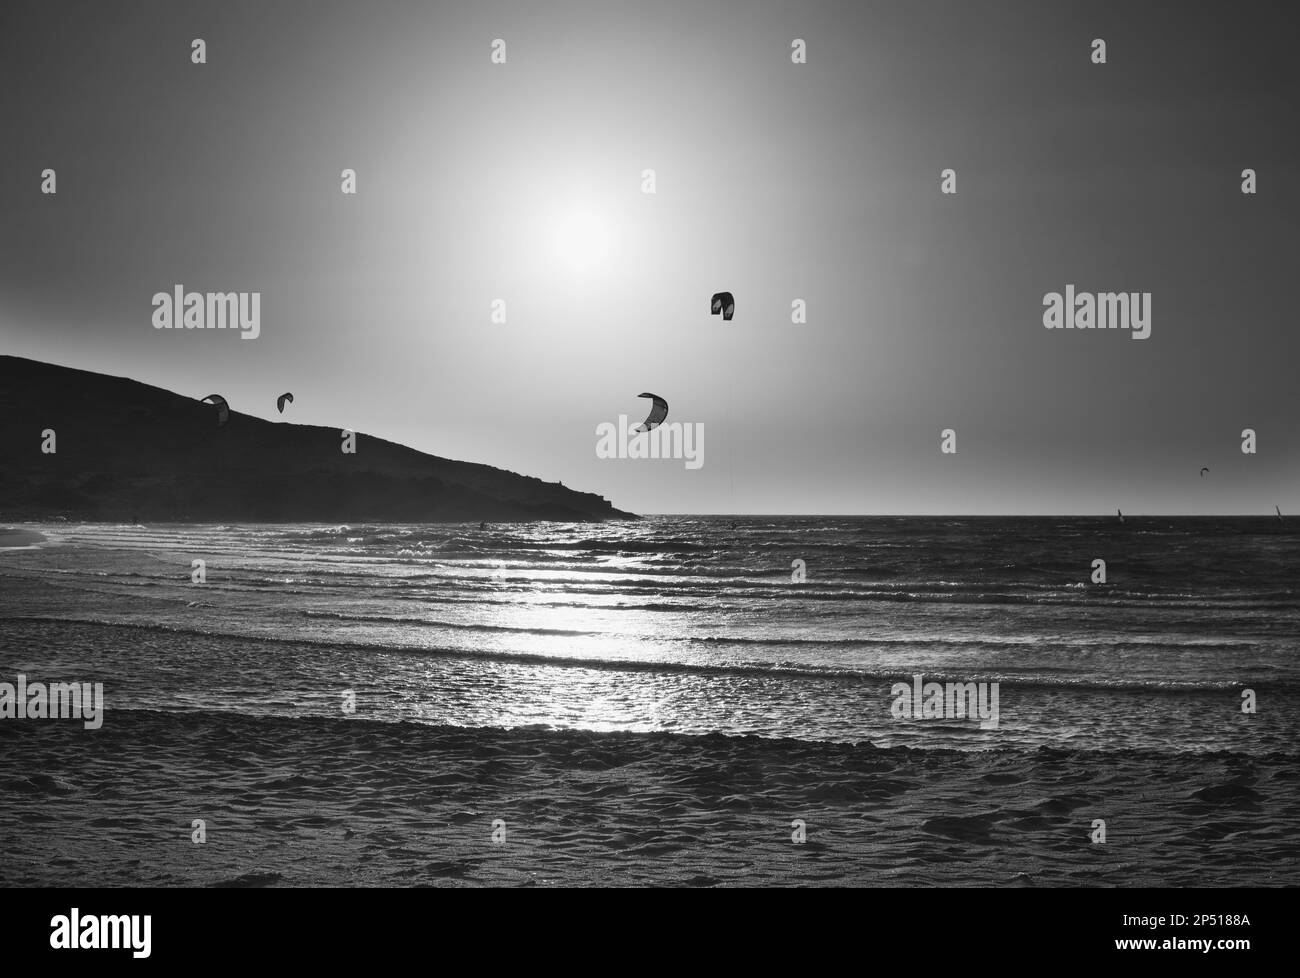 Windsurf e kitesurf alla spiaggia di Prasonisi a Rhodes Islnad in Grecia Foto Stock